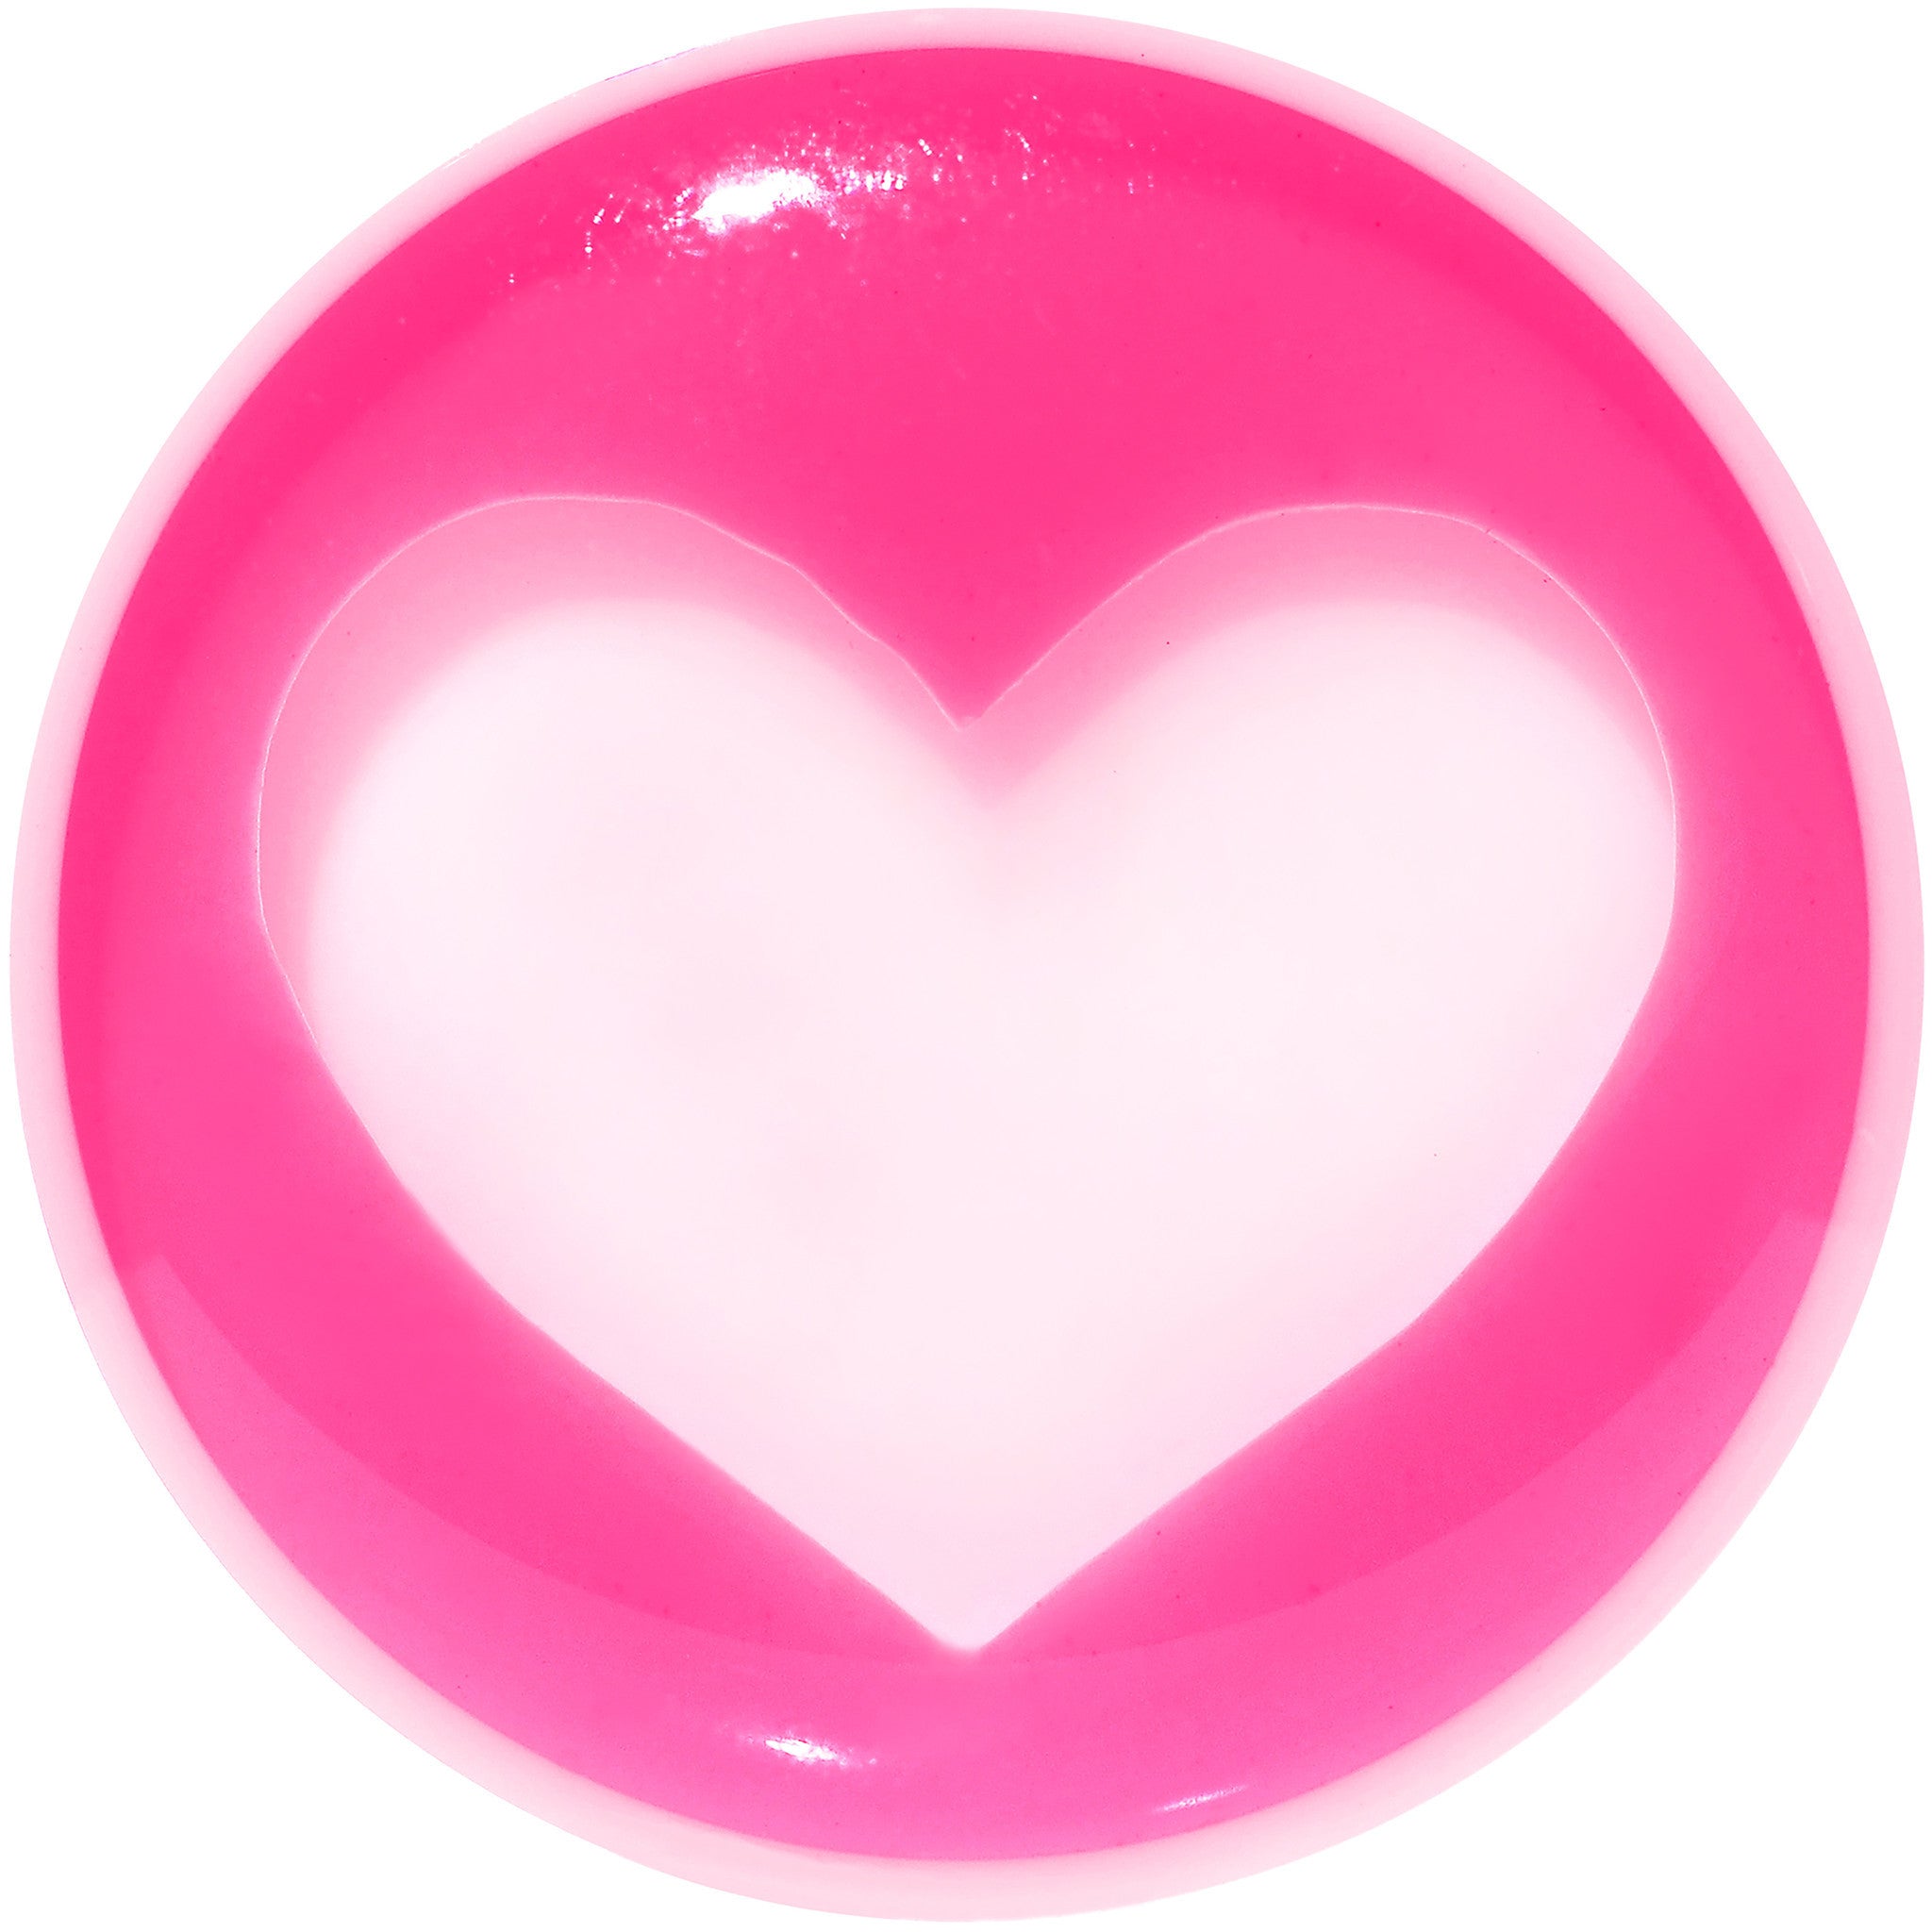 18mm White Pink Acrylic Adoring Heart Saddle Plug